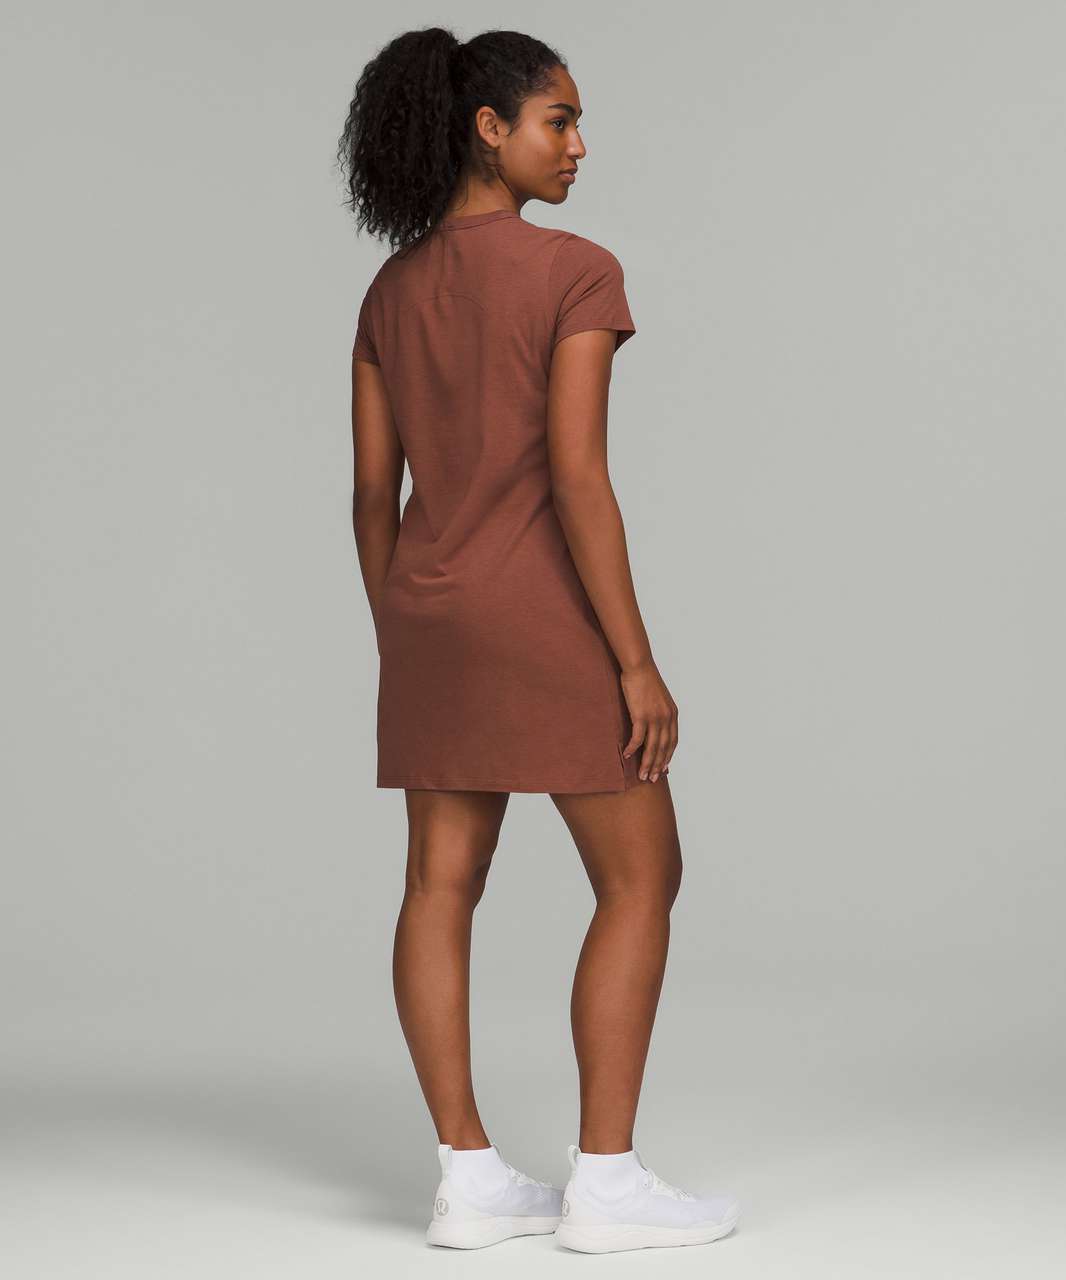 Lululemon Classic-Fit Cotton-Blend T-Shirt Dress - Ancient Copper